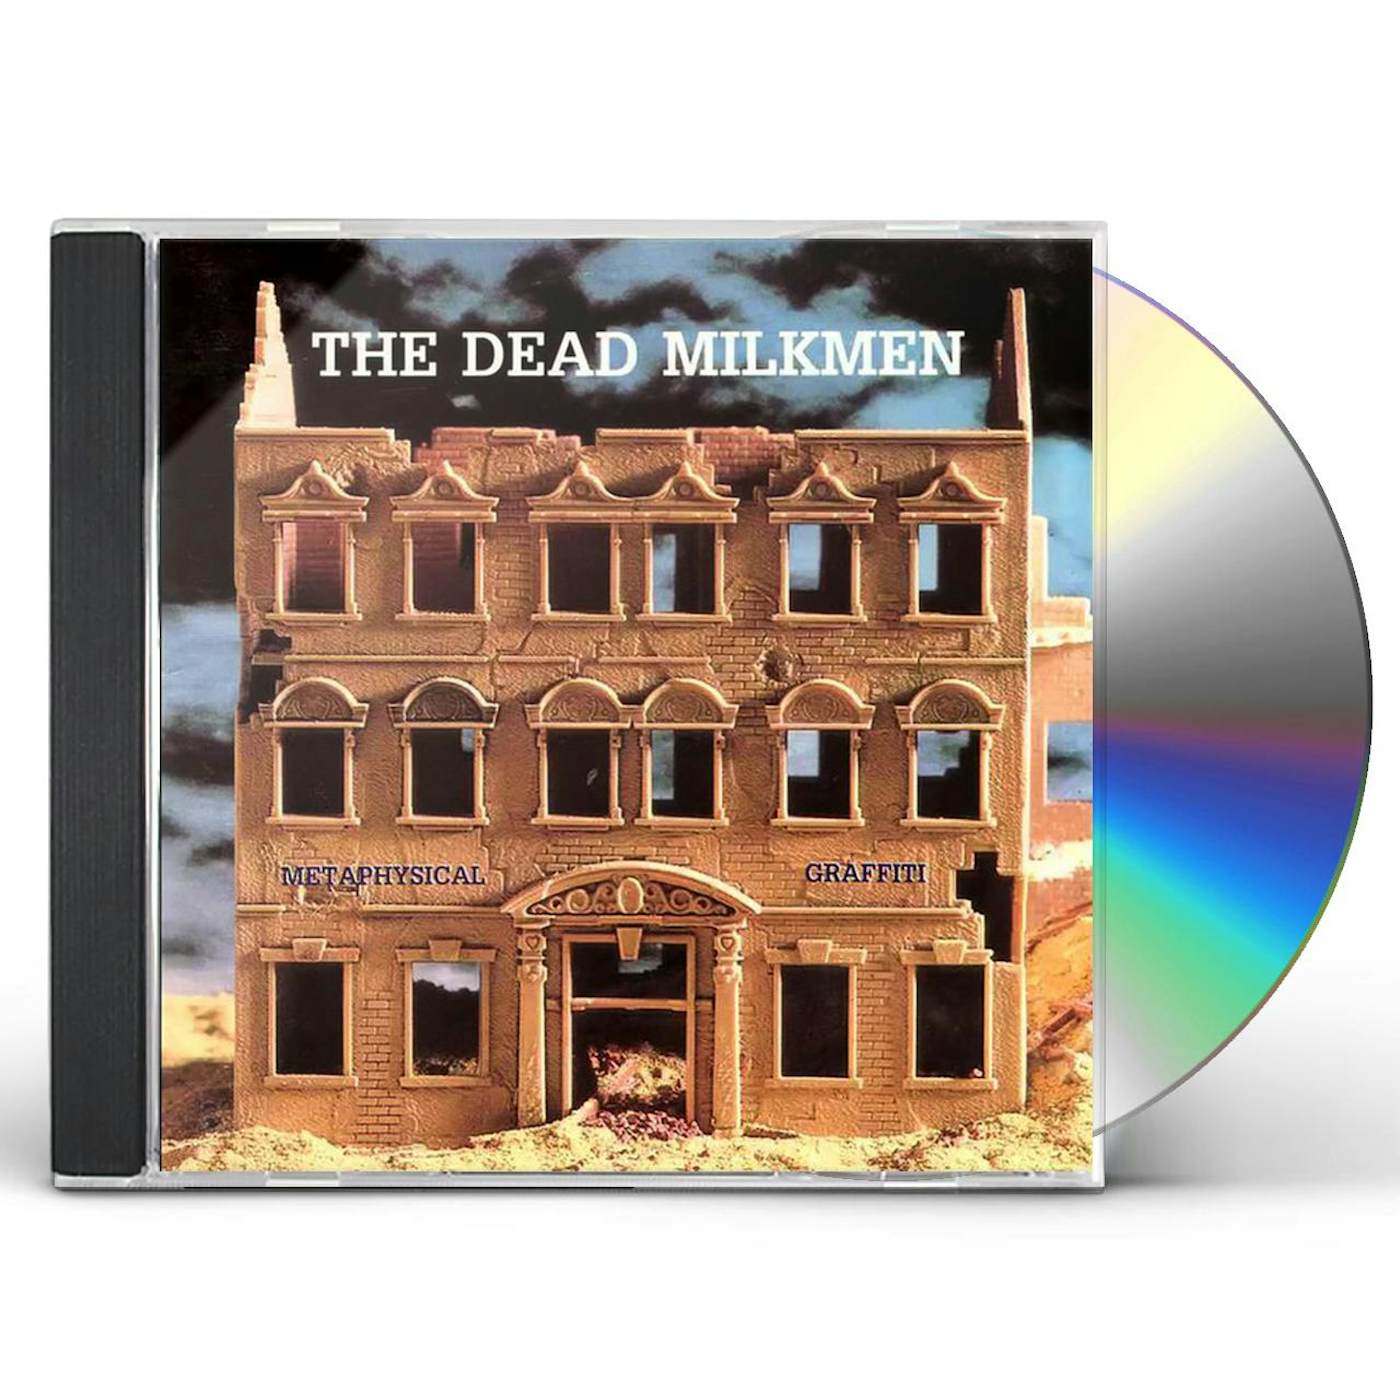 The Dead Milkmen METAPHYSICAL GRAFFITI CD